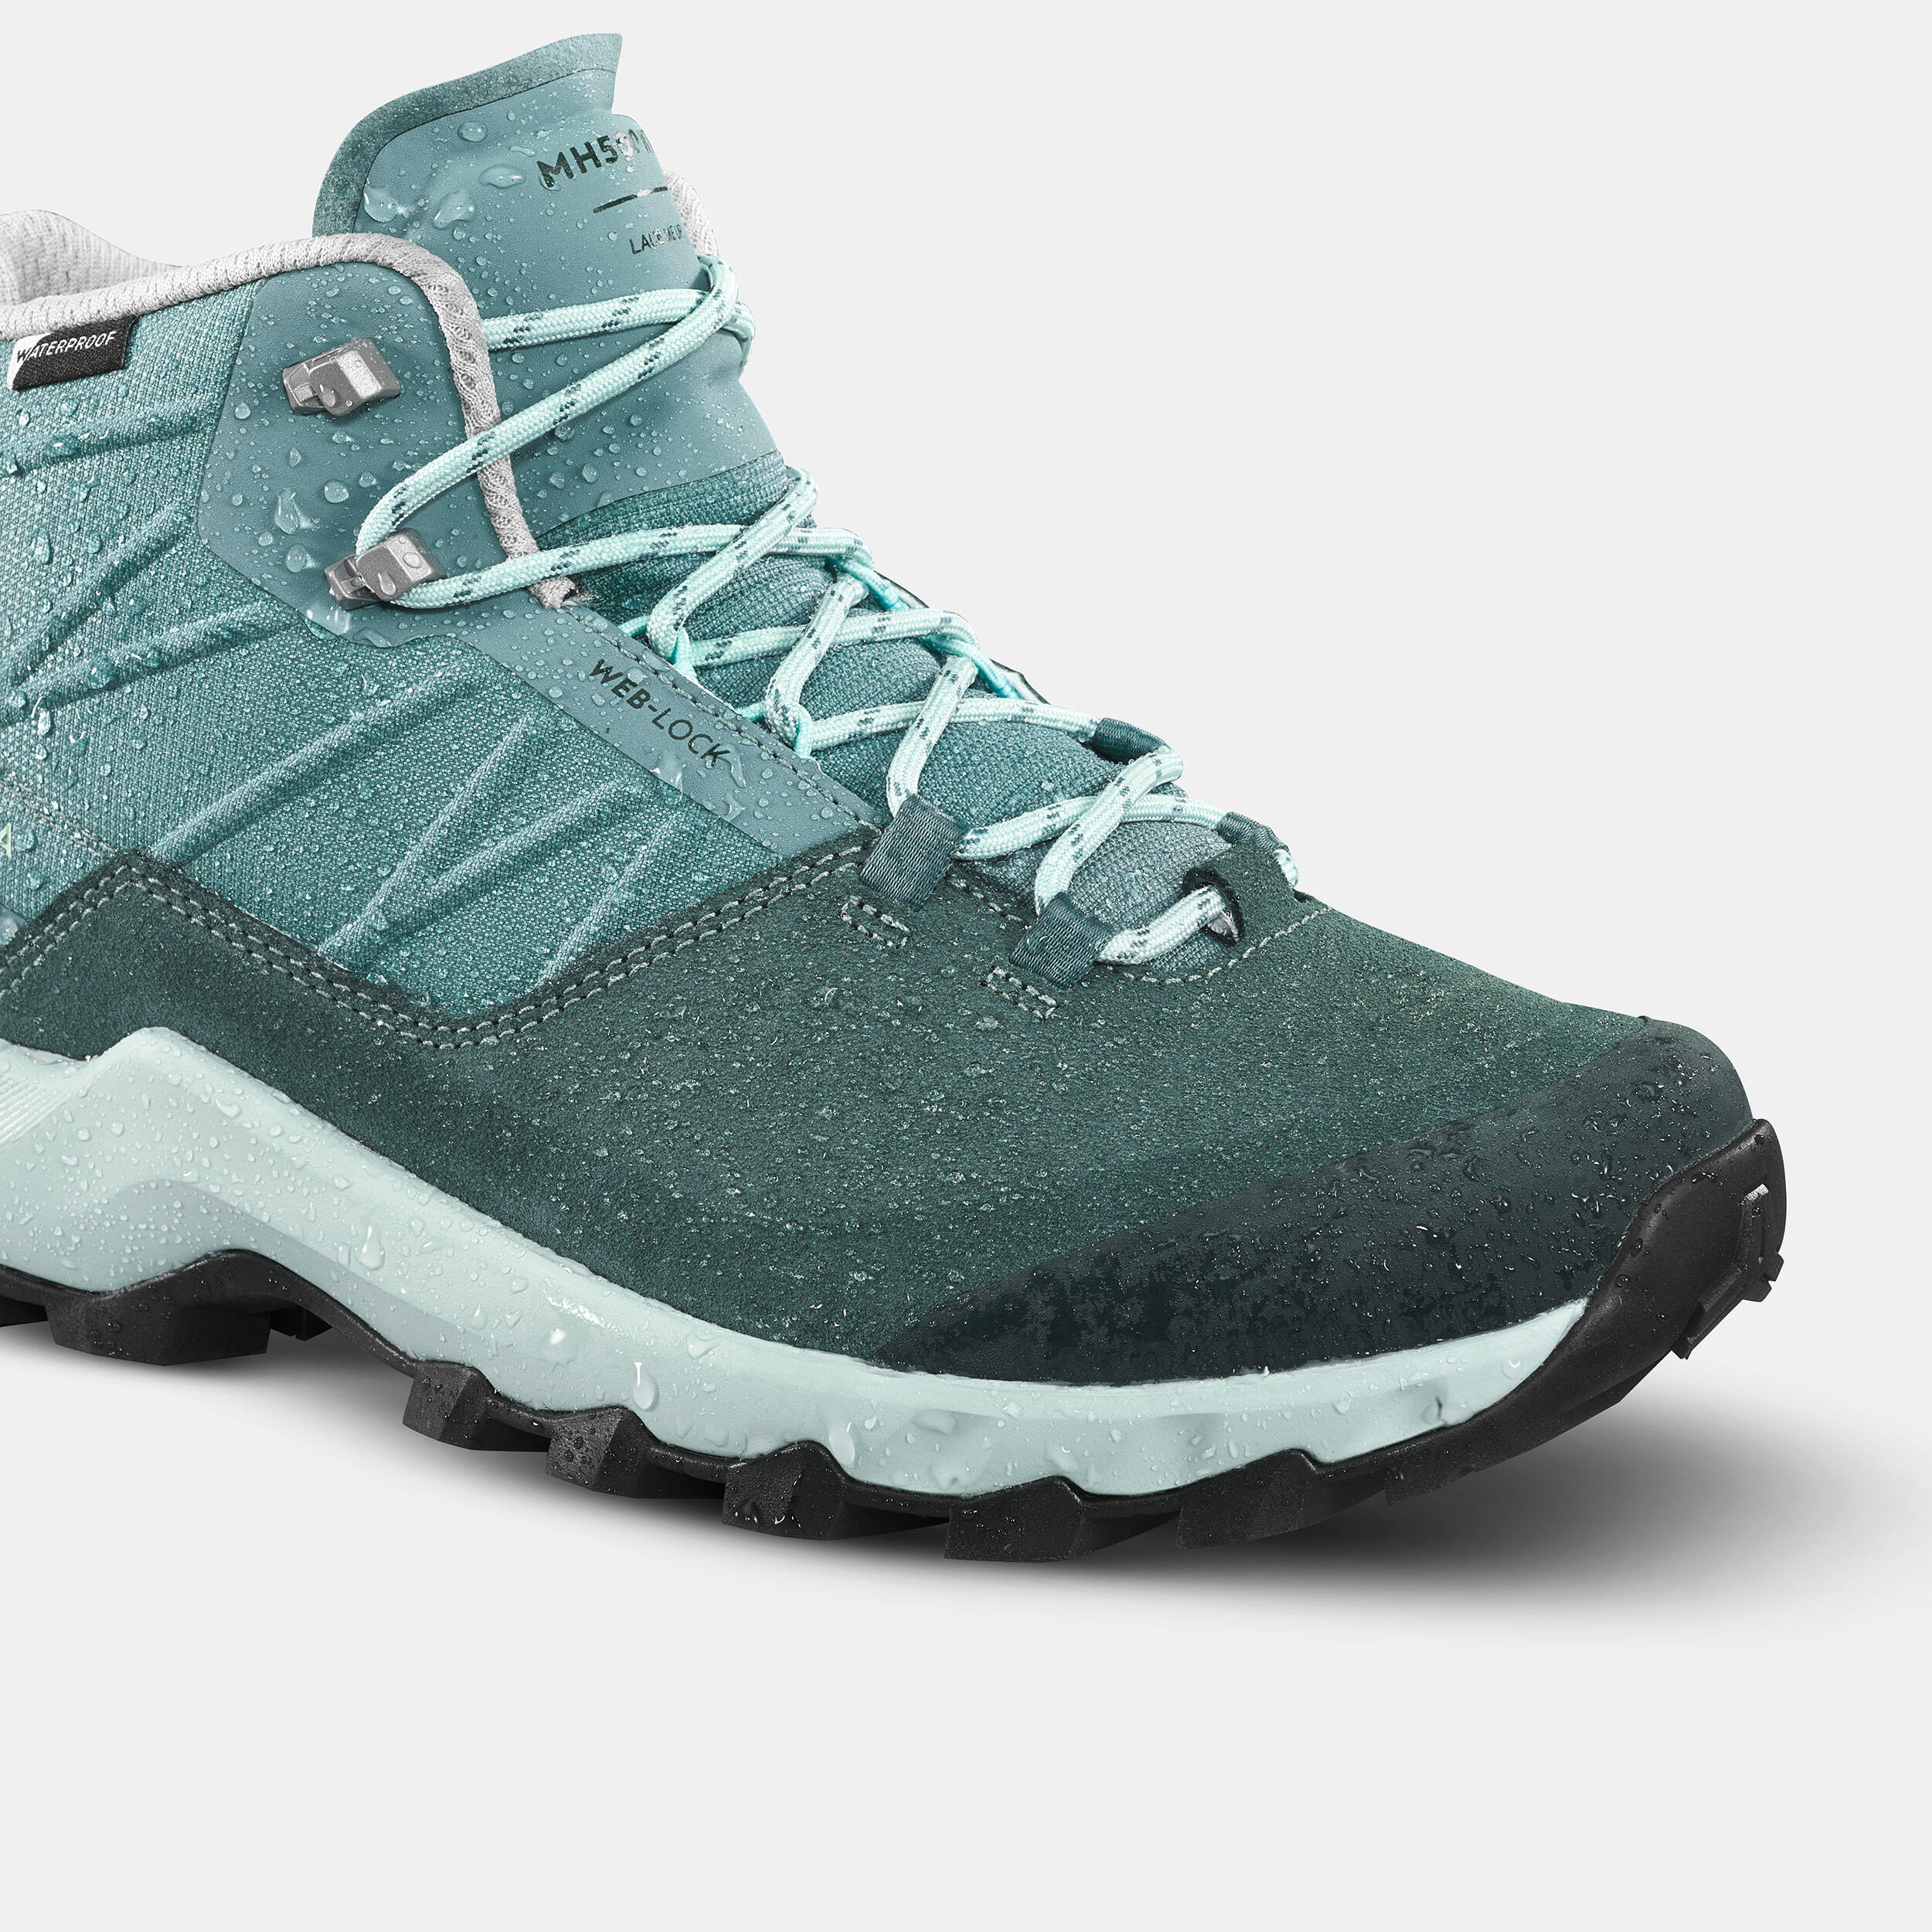 Women’s waterproof mountain walking boots - MH500 Mid - Green 4/12